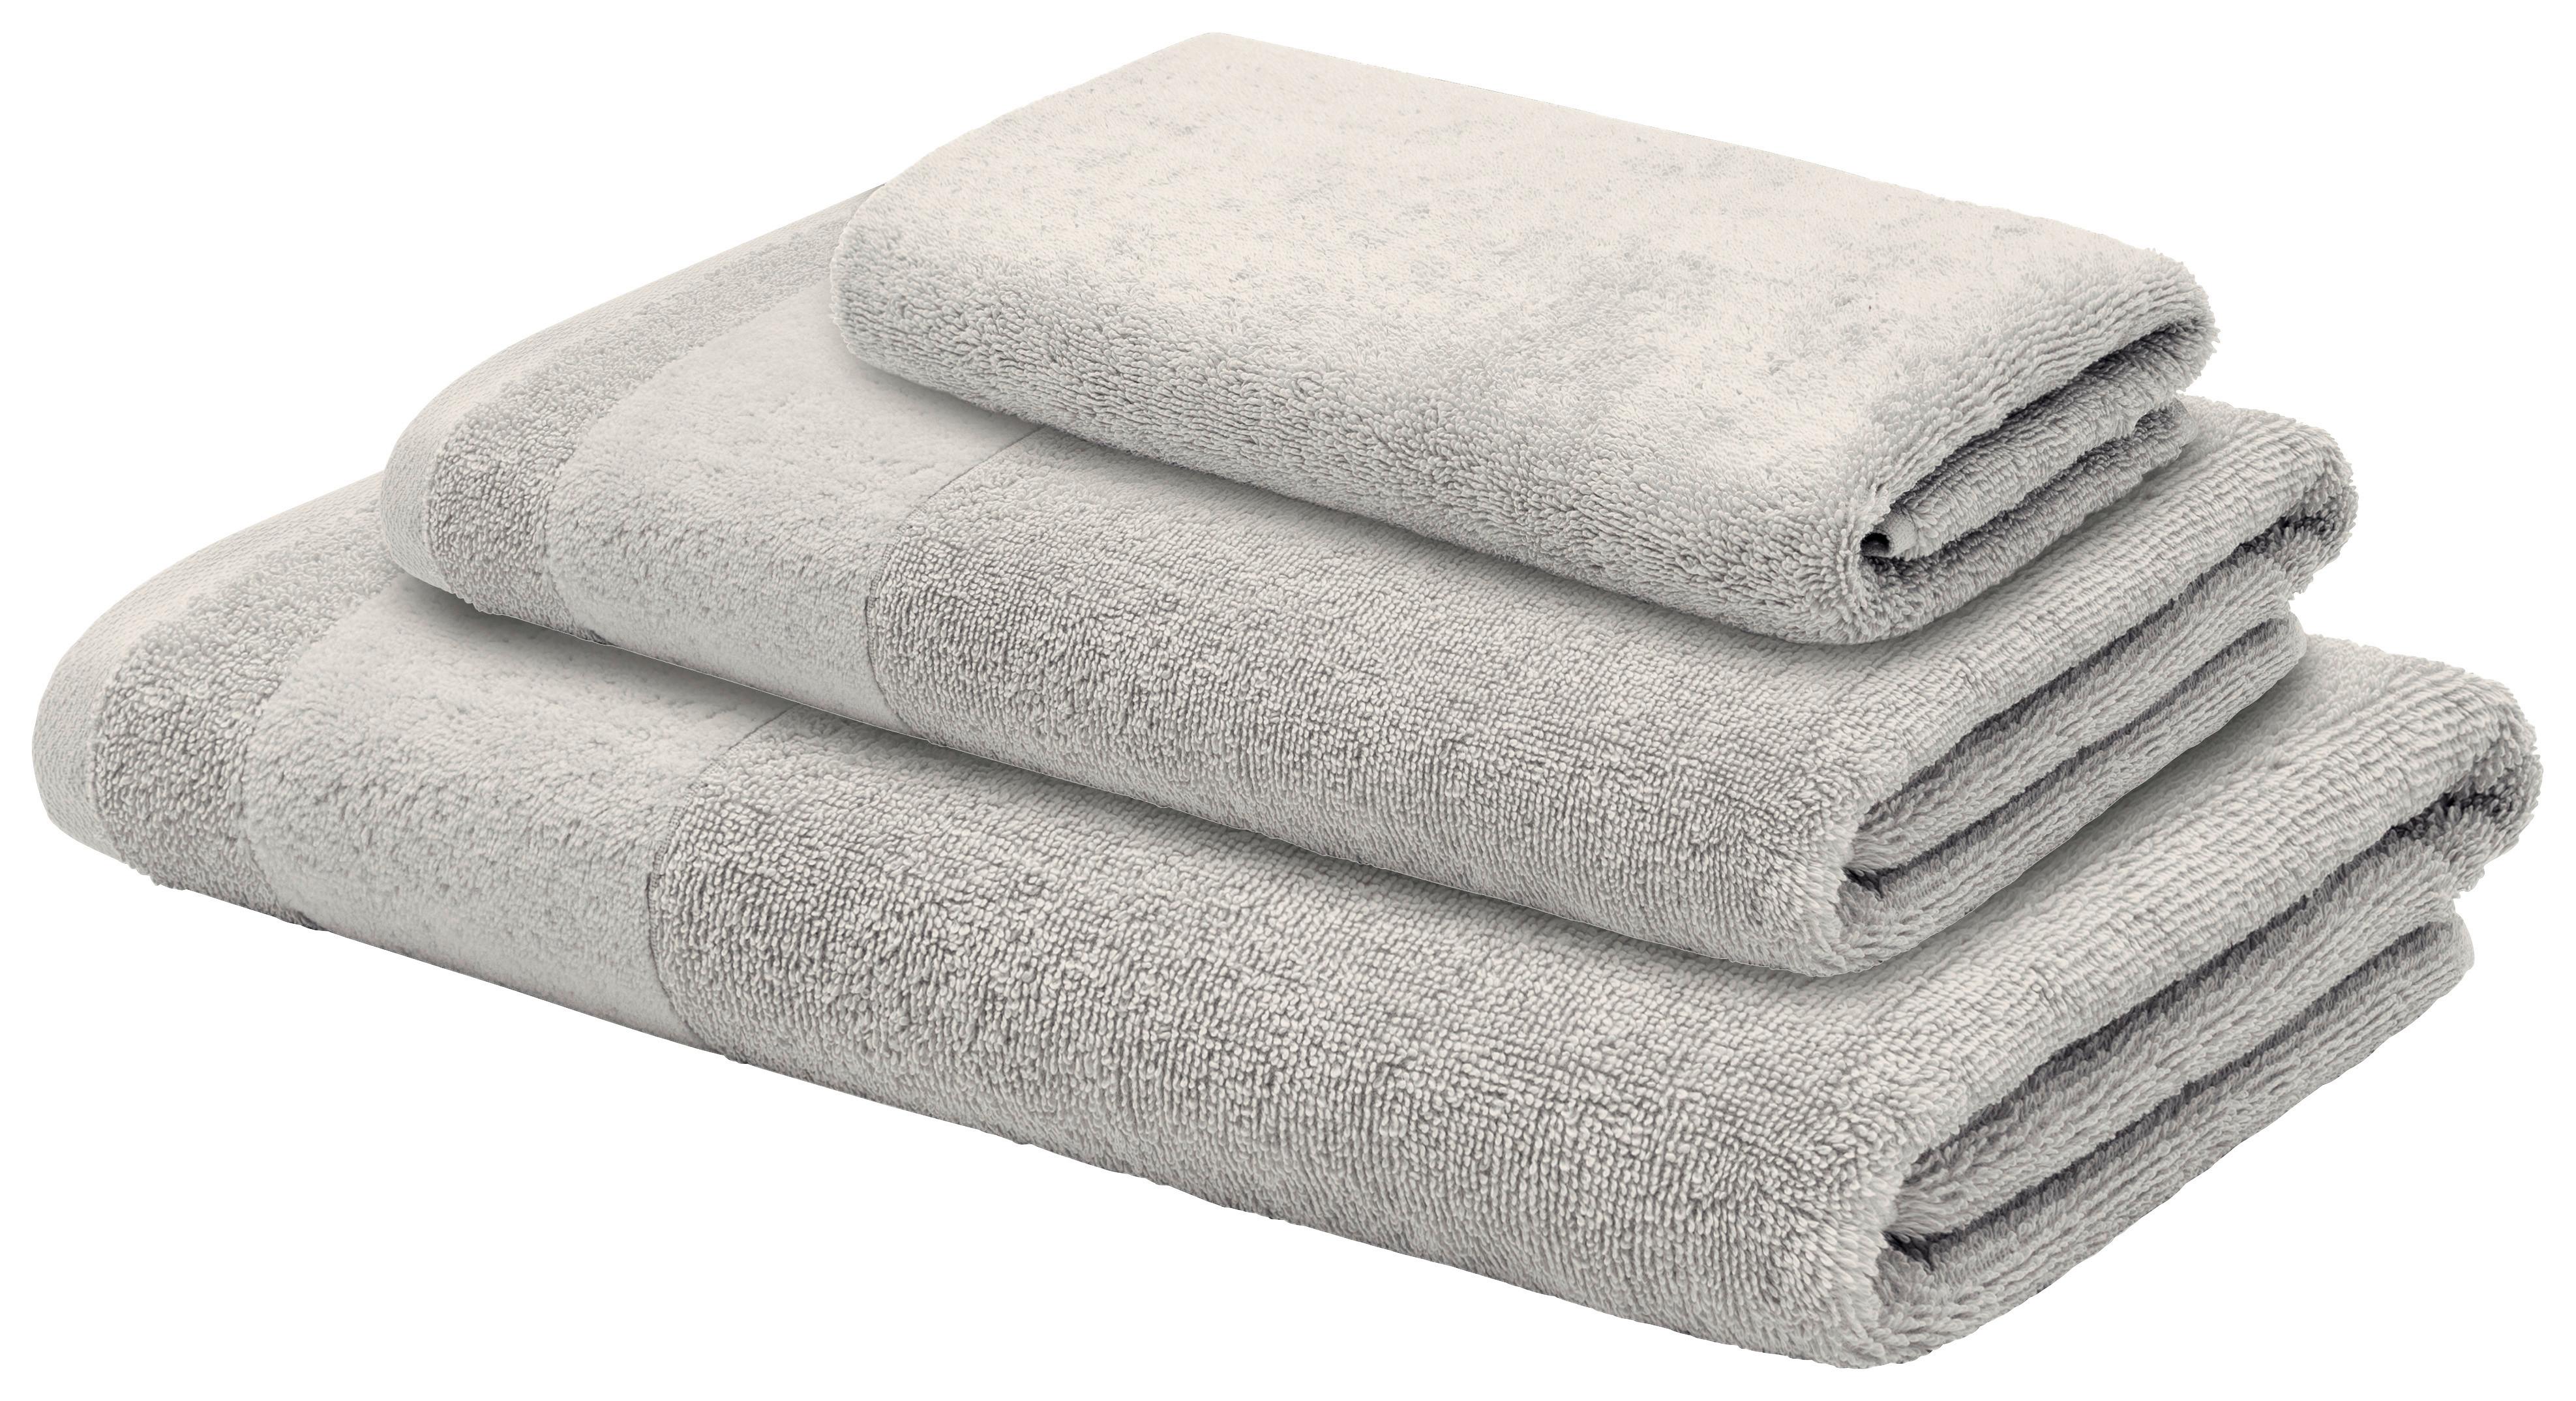 Handtuch Set Frottee 3-Teilig Baumwolle Silber 550 G/M2 - Silberfarben, KONVENTIONELL, Textil - LOOKS by W.Joop